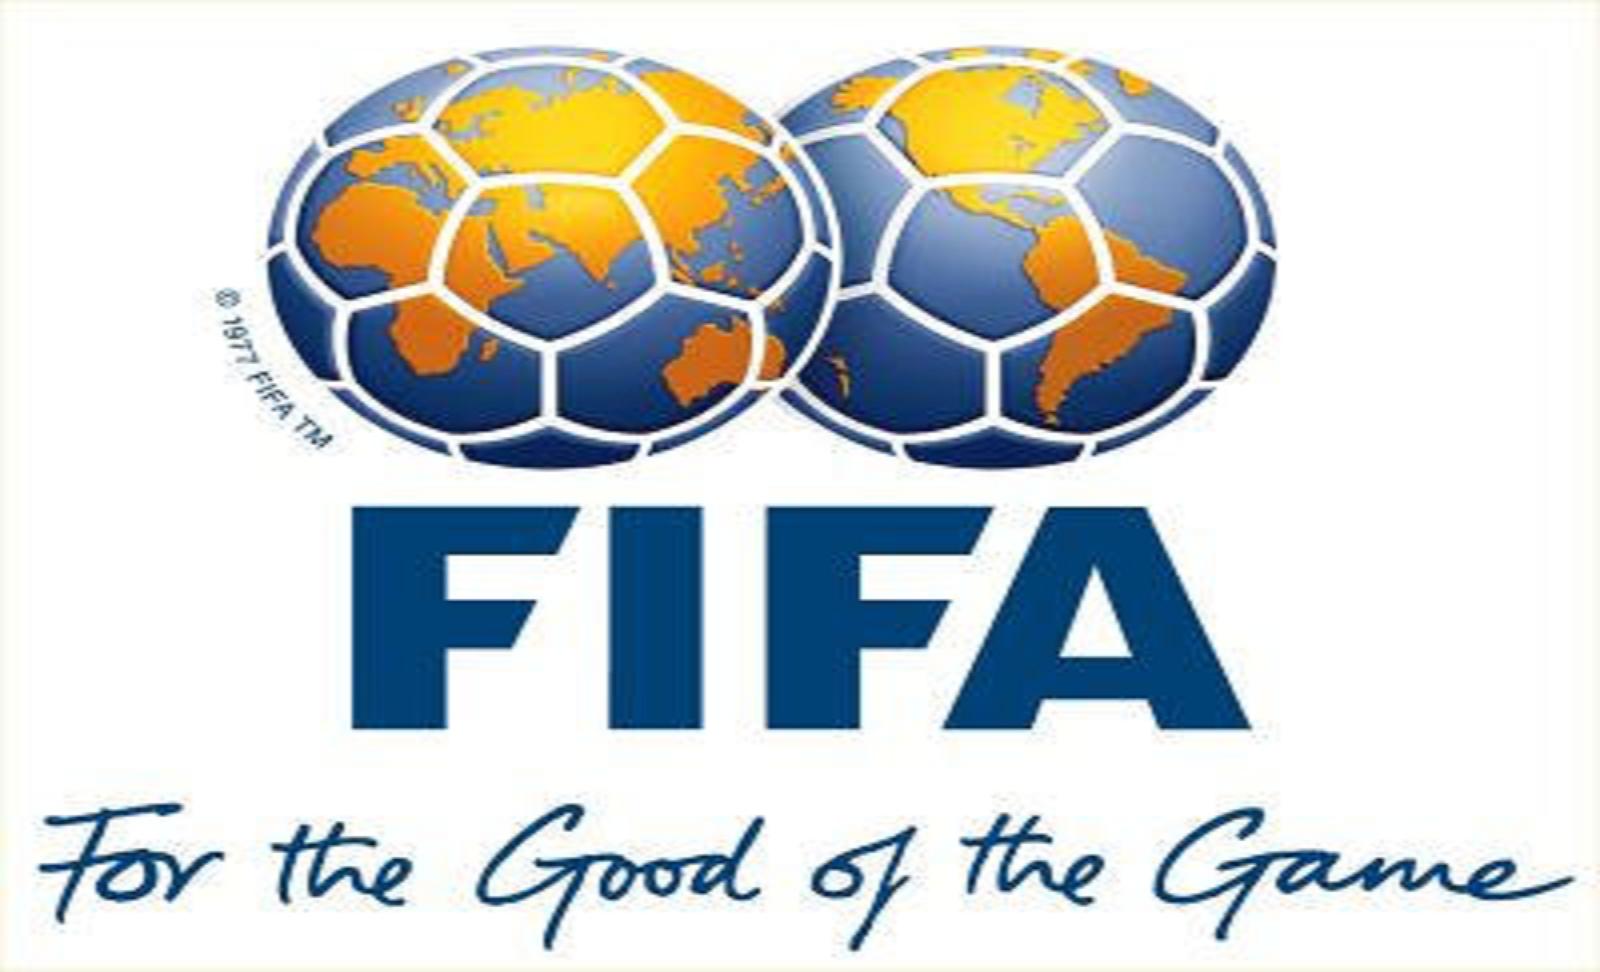 تصنيف الاتحاد الدولي لكرة القدم فيفا شهر يونيو2014 , ترتيب المنتخبات حسب الفيفا حزيران 2014